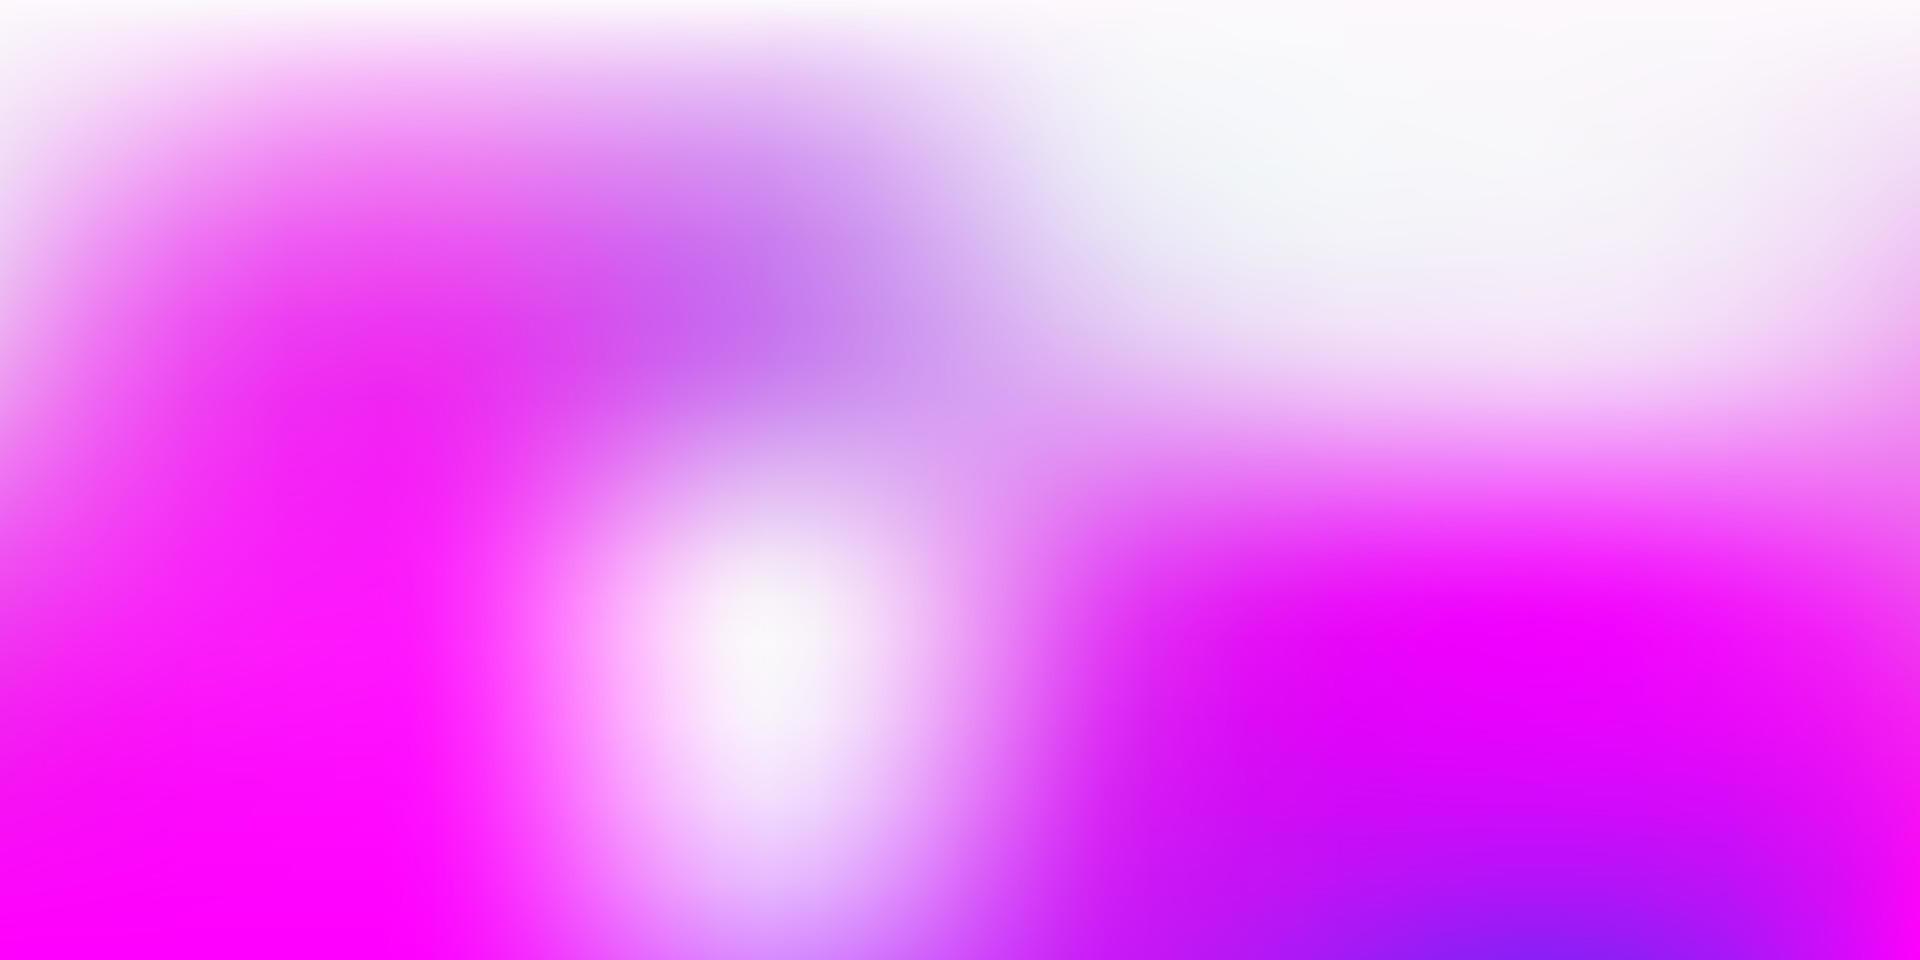 patrón borroso vector rosa claro, azul.